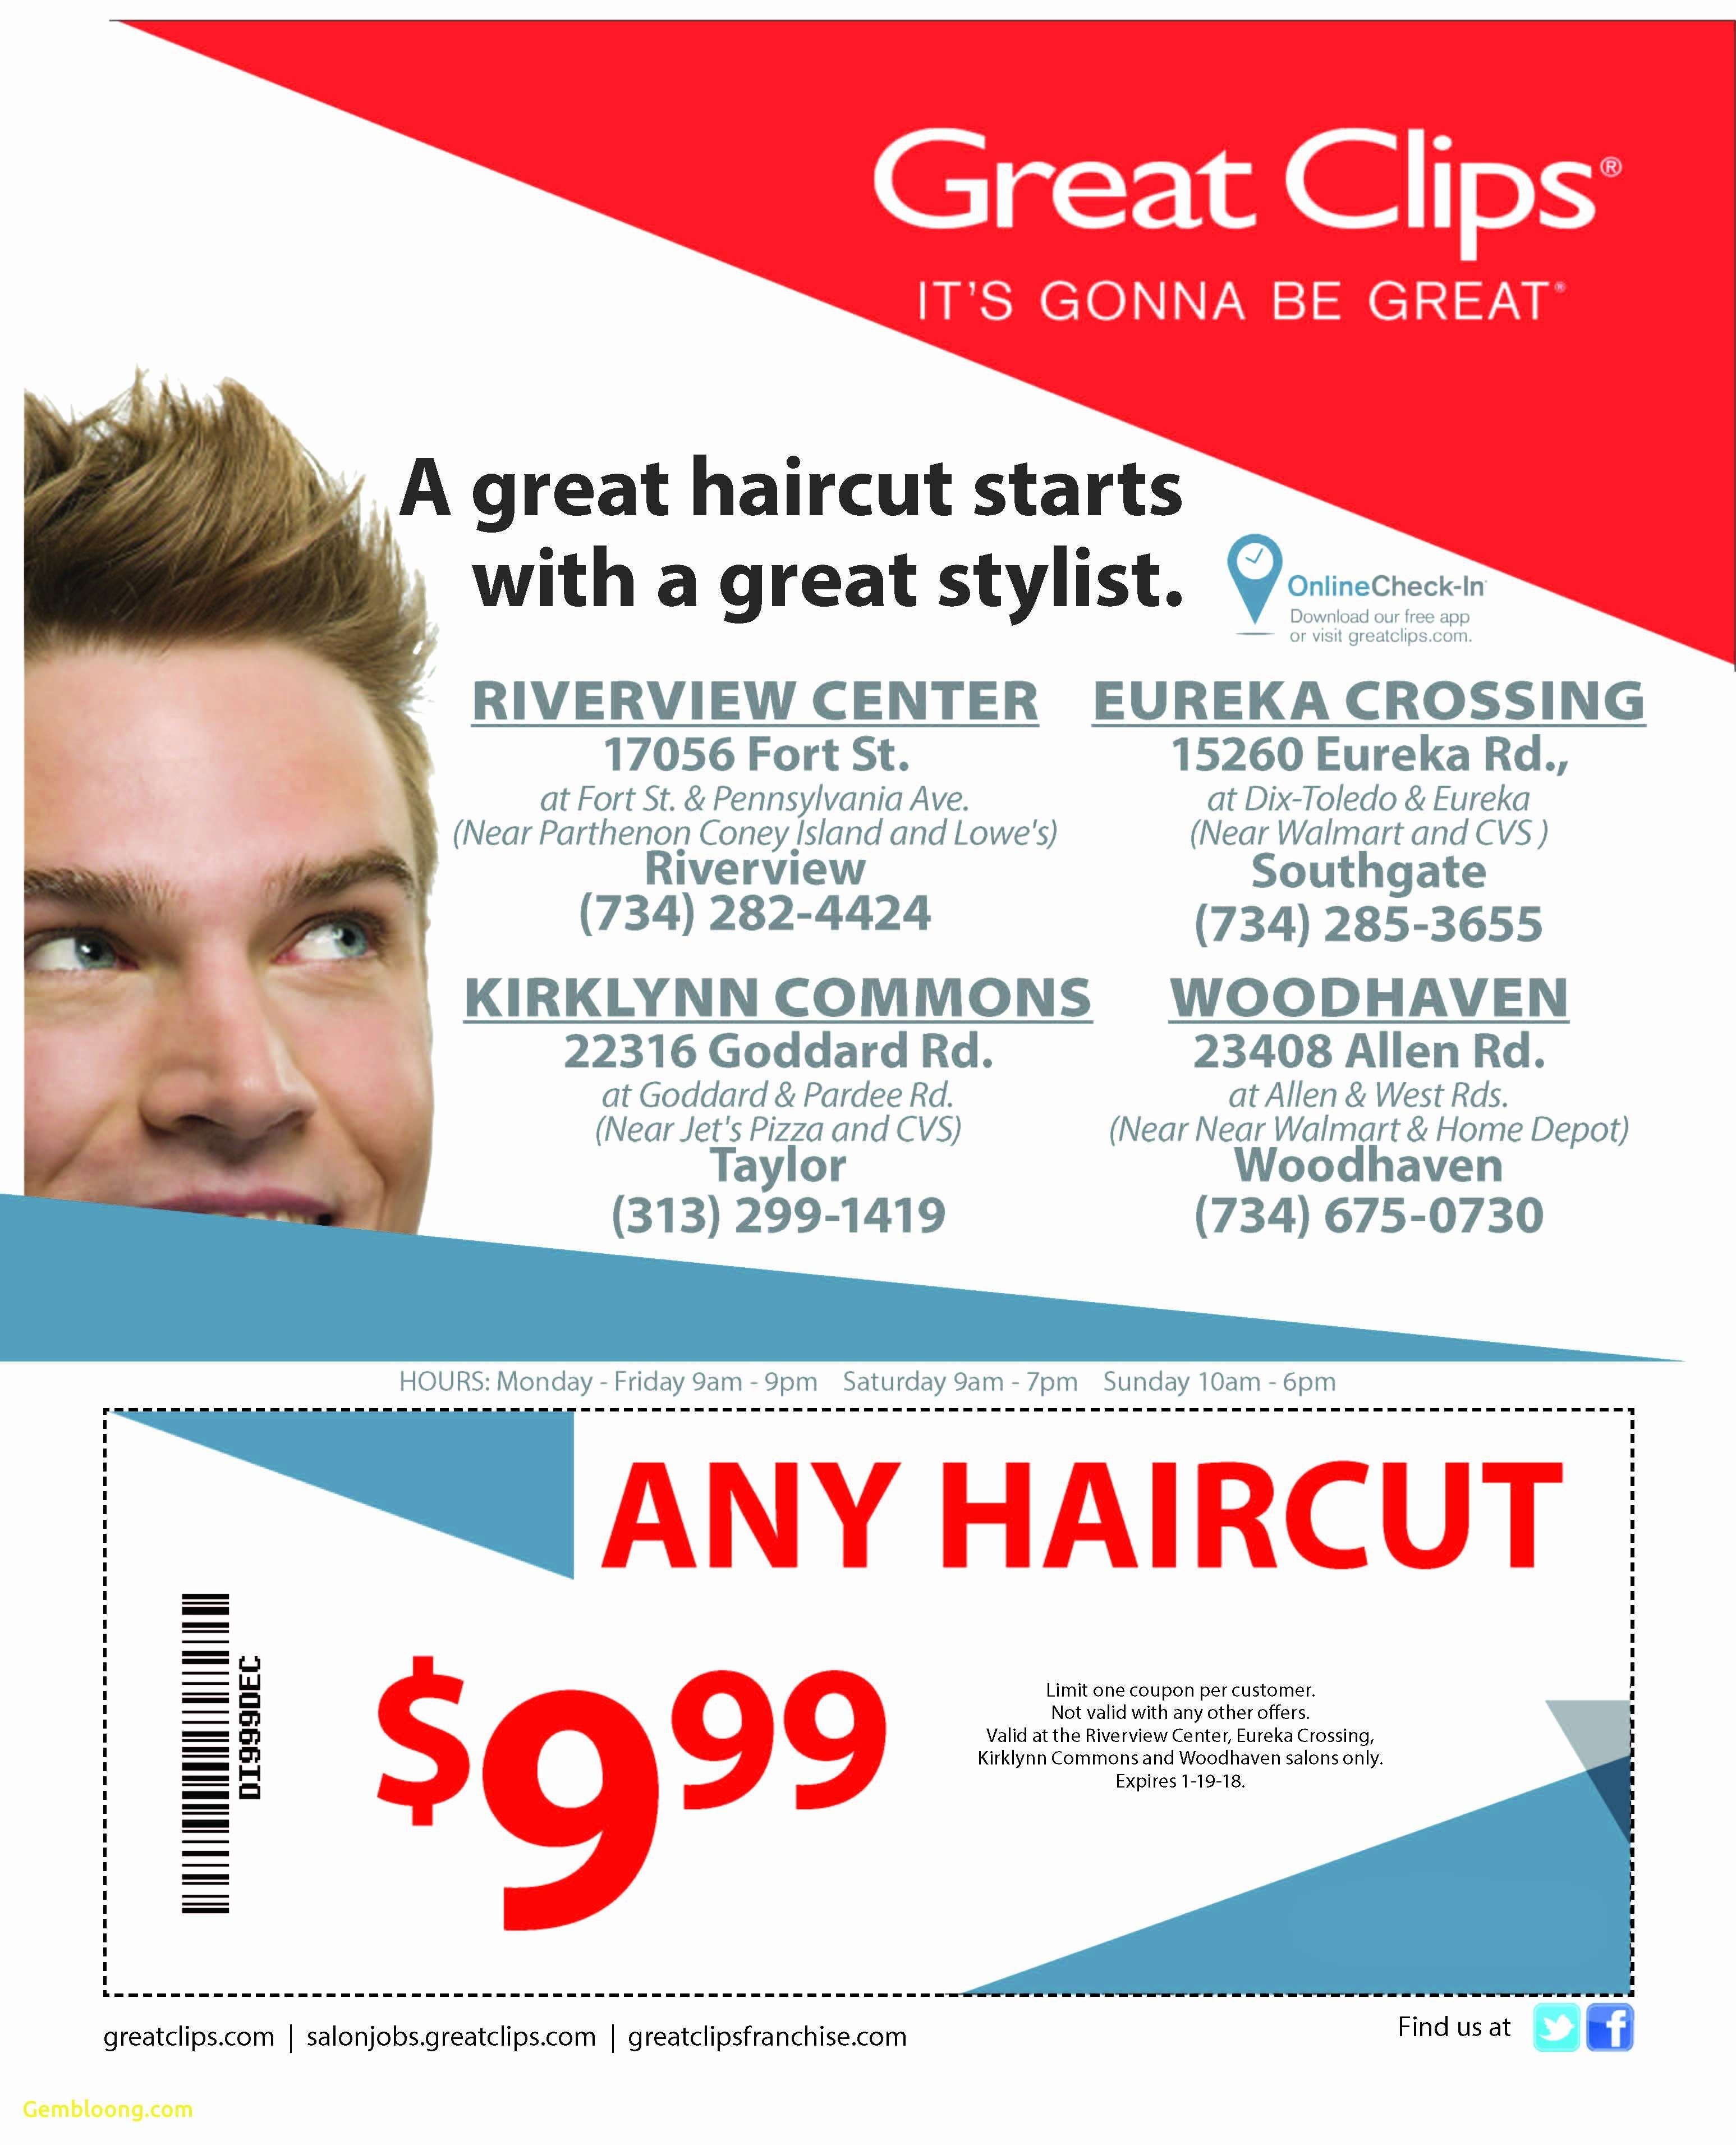 21 Sports Clips Free Haircut Printable Coupon | Hairstyles Ideas - Sports Clips Free Haircut Printable Coupon